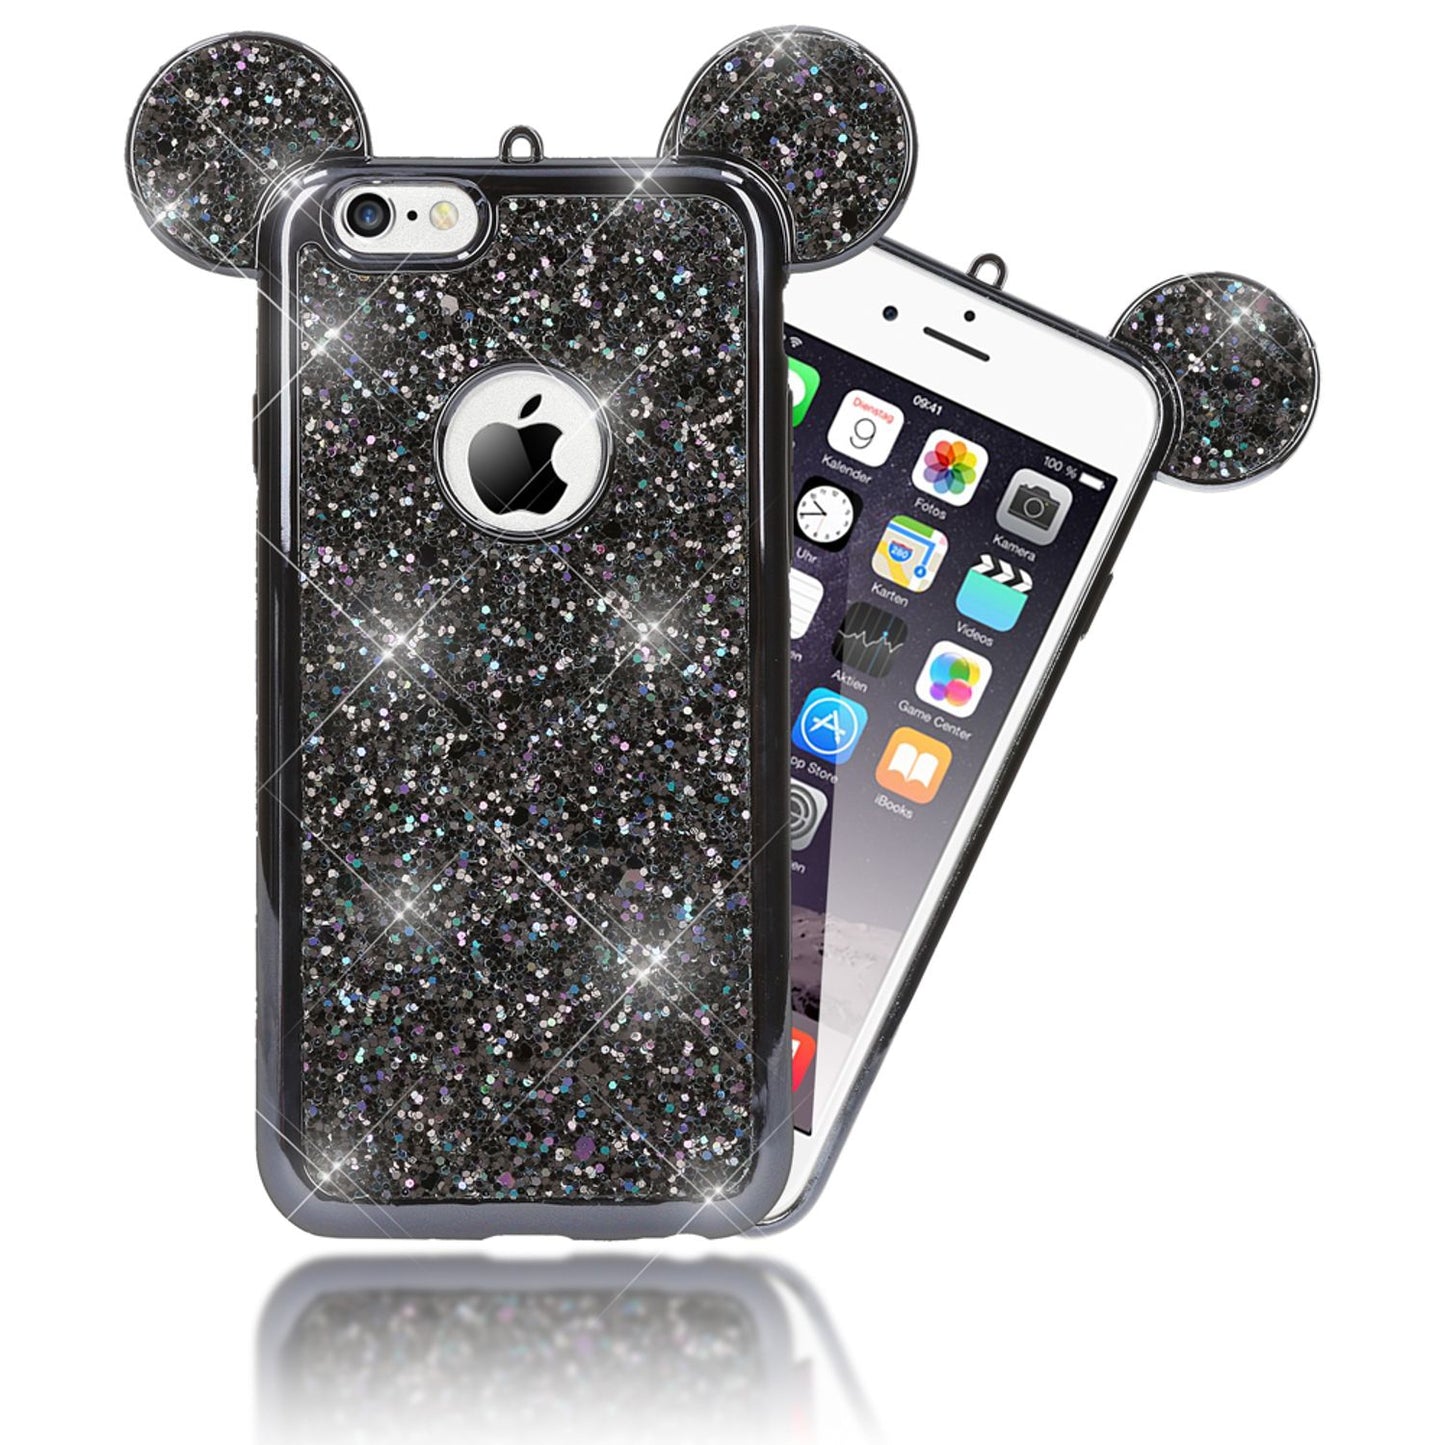 Apple iPhone 6 6S Handy Hülle von NALIA, Glitzer Back Cover Case mit Maus Ohren